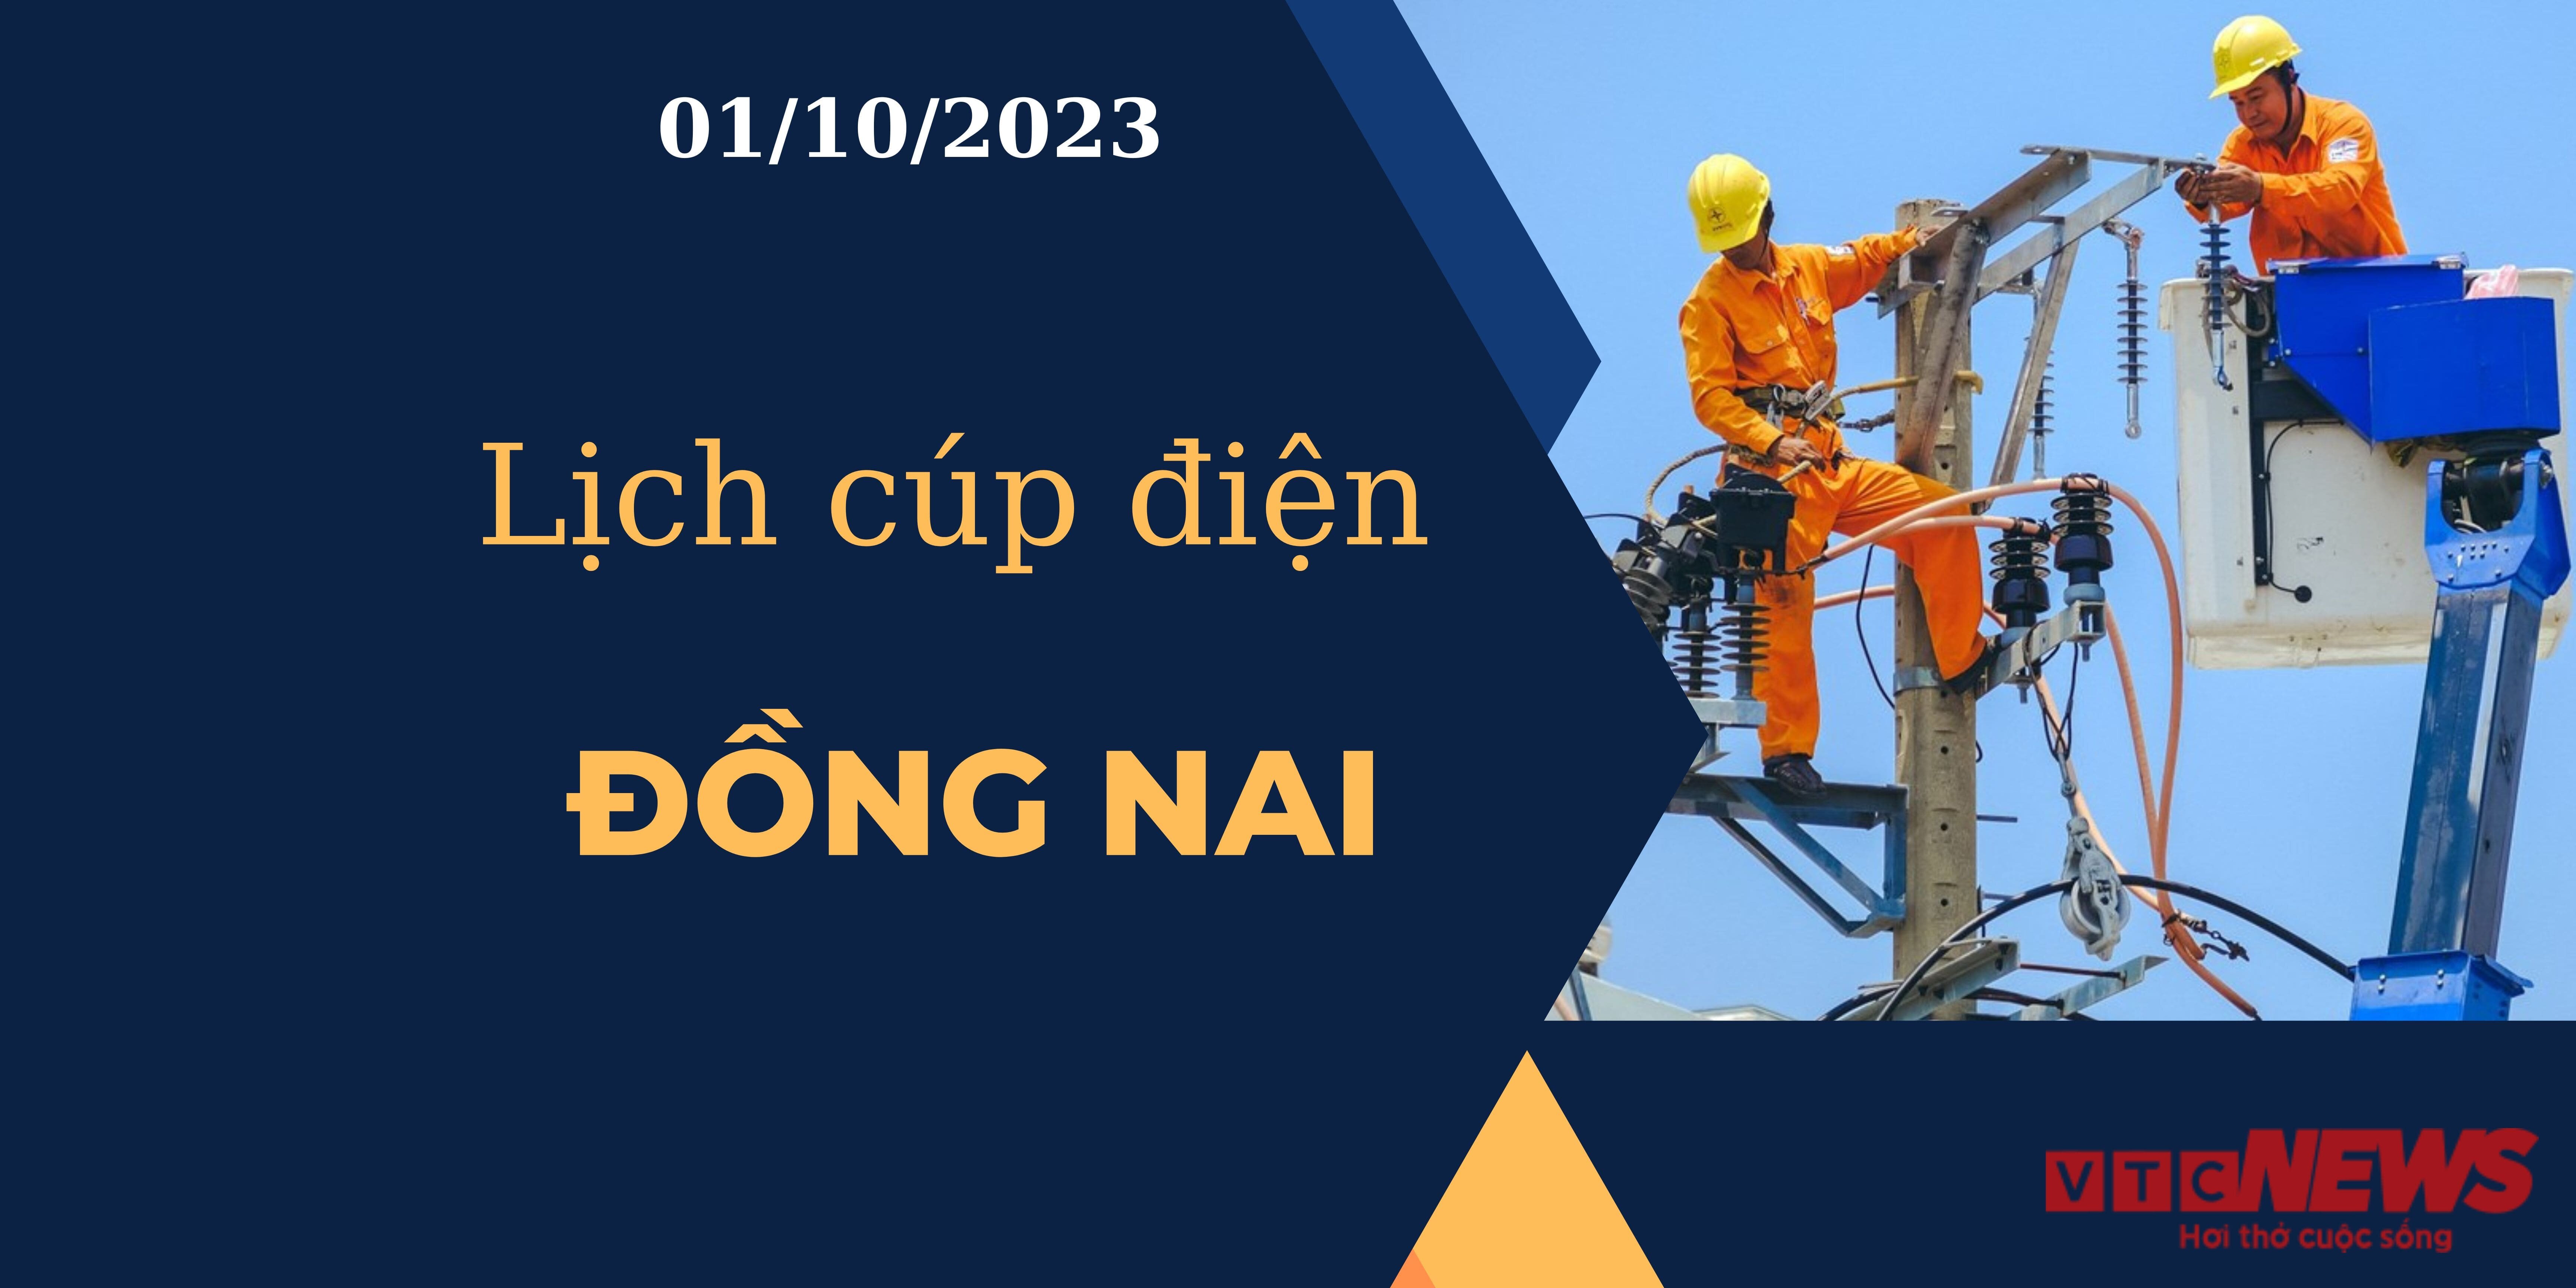 Lịch cúp điện Đồng Nai ngày 01/10/2023